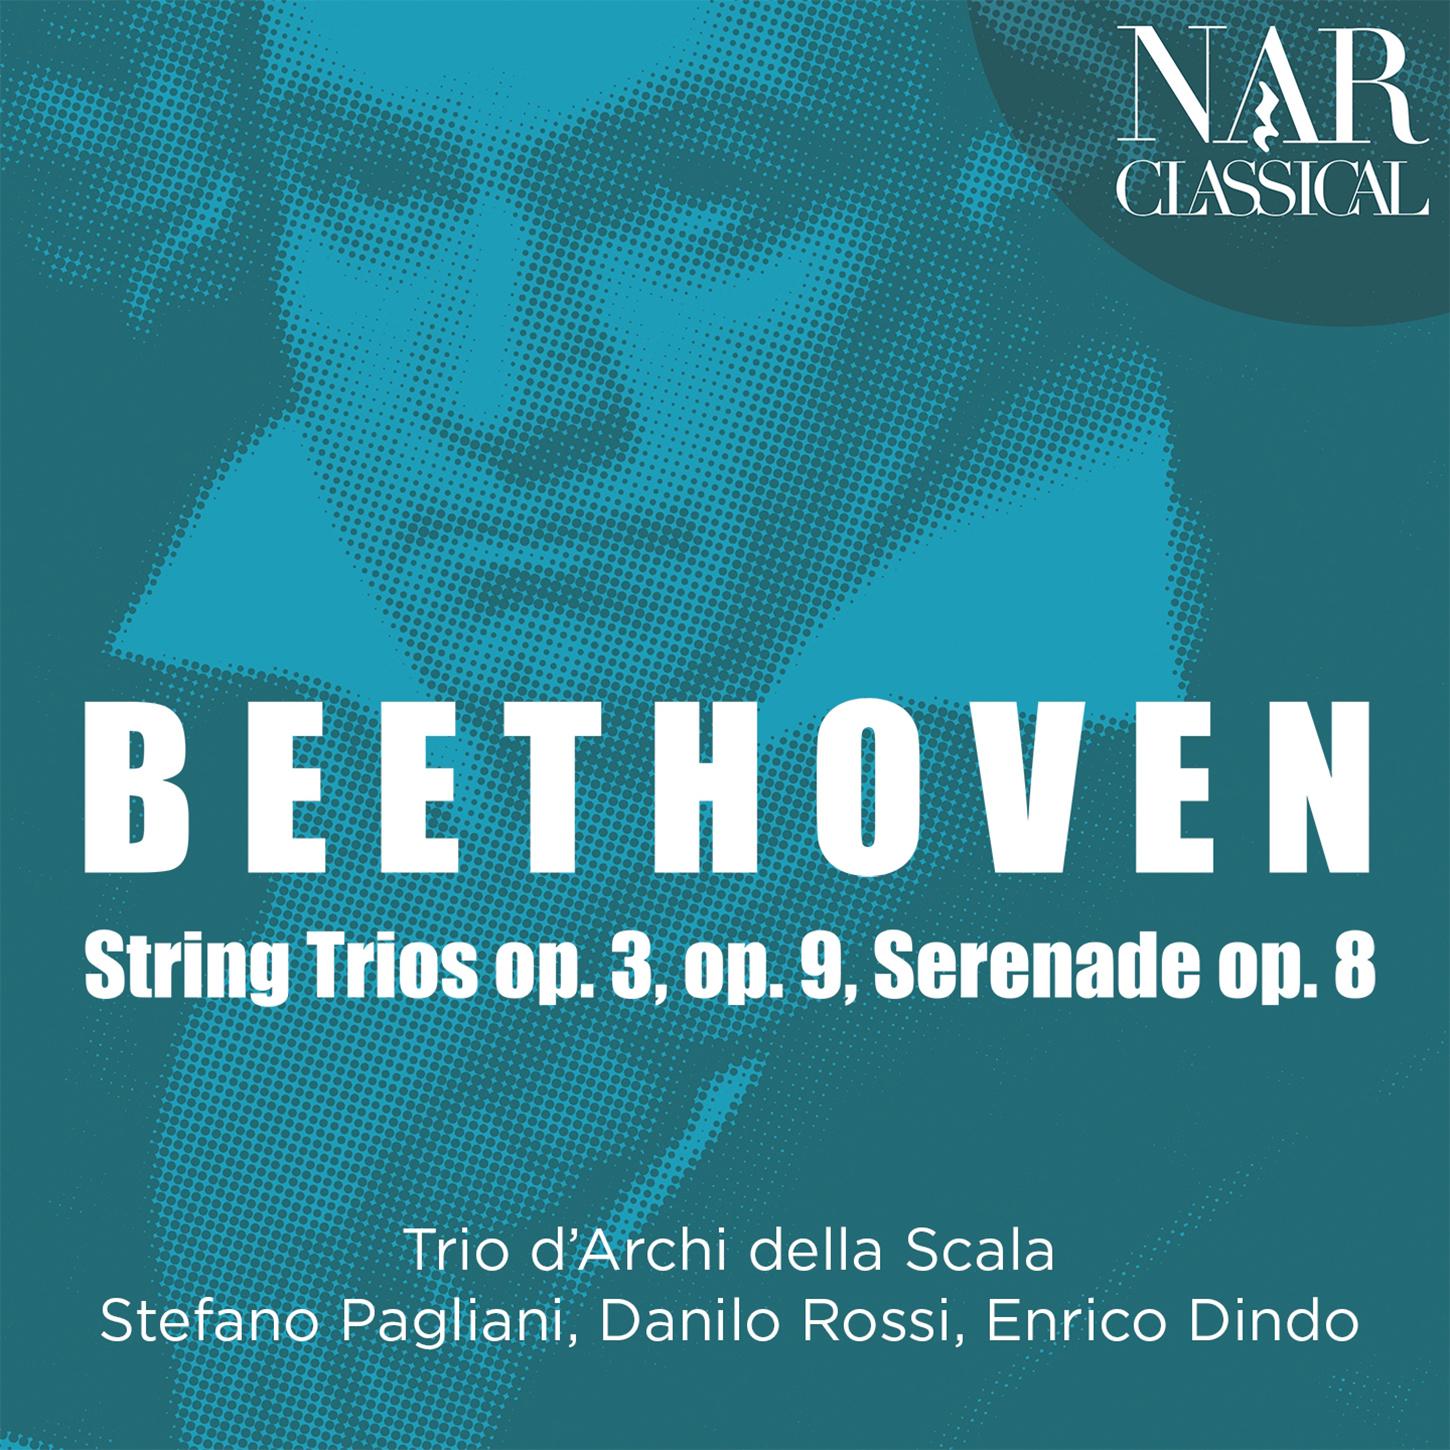 Trio d'Archi della Scala - Serenade for String Trio in D Major, Op. 8:IV. Adagio - Scherzo. Allegro molto - Adagio - Allegro molto - Adagio